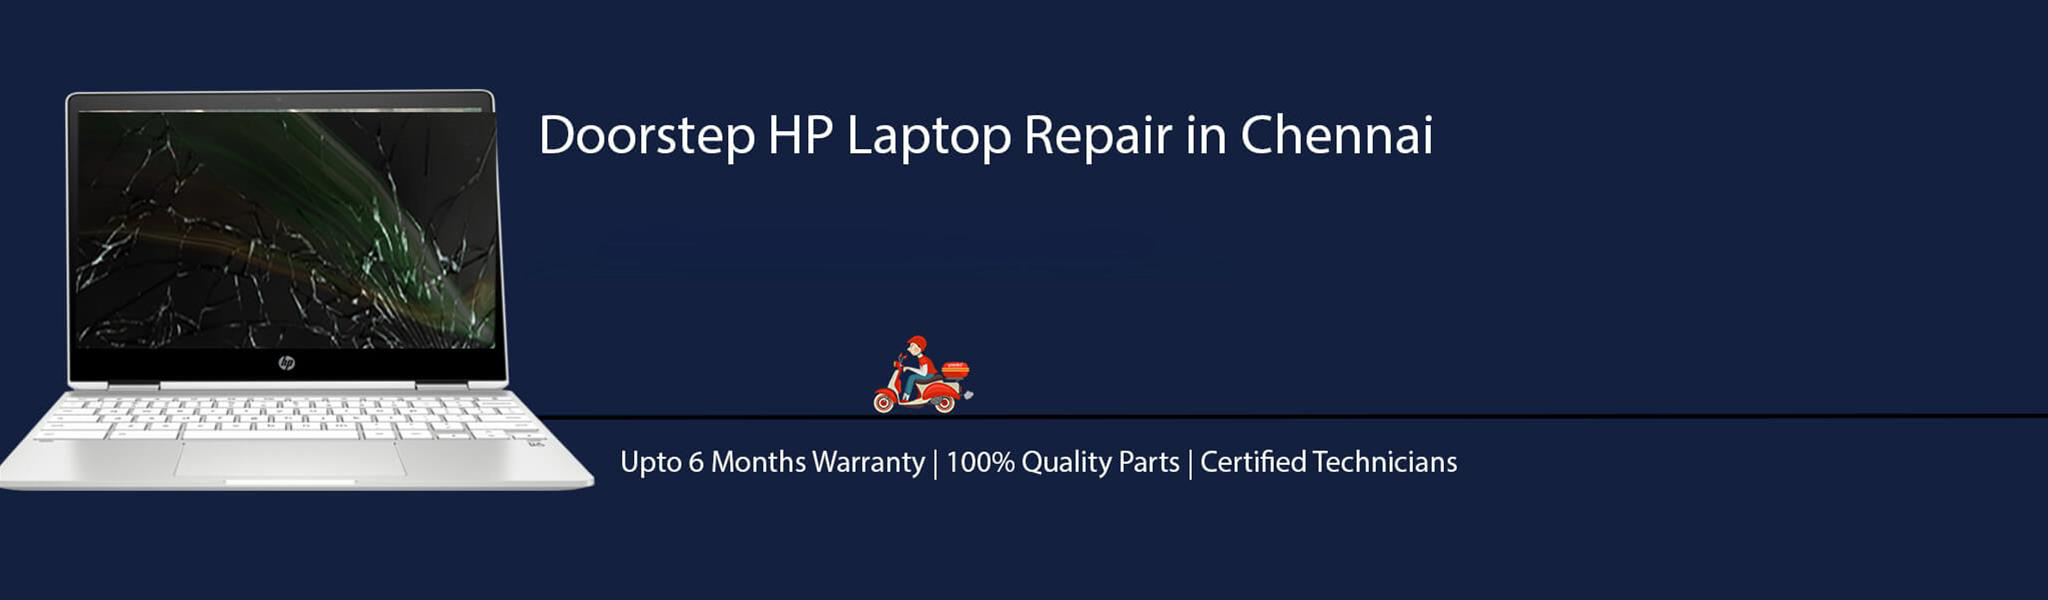 HP-laptop-banner-chennai.jpg